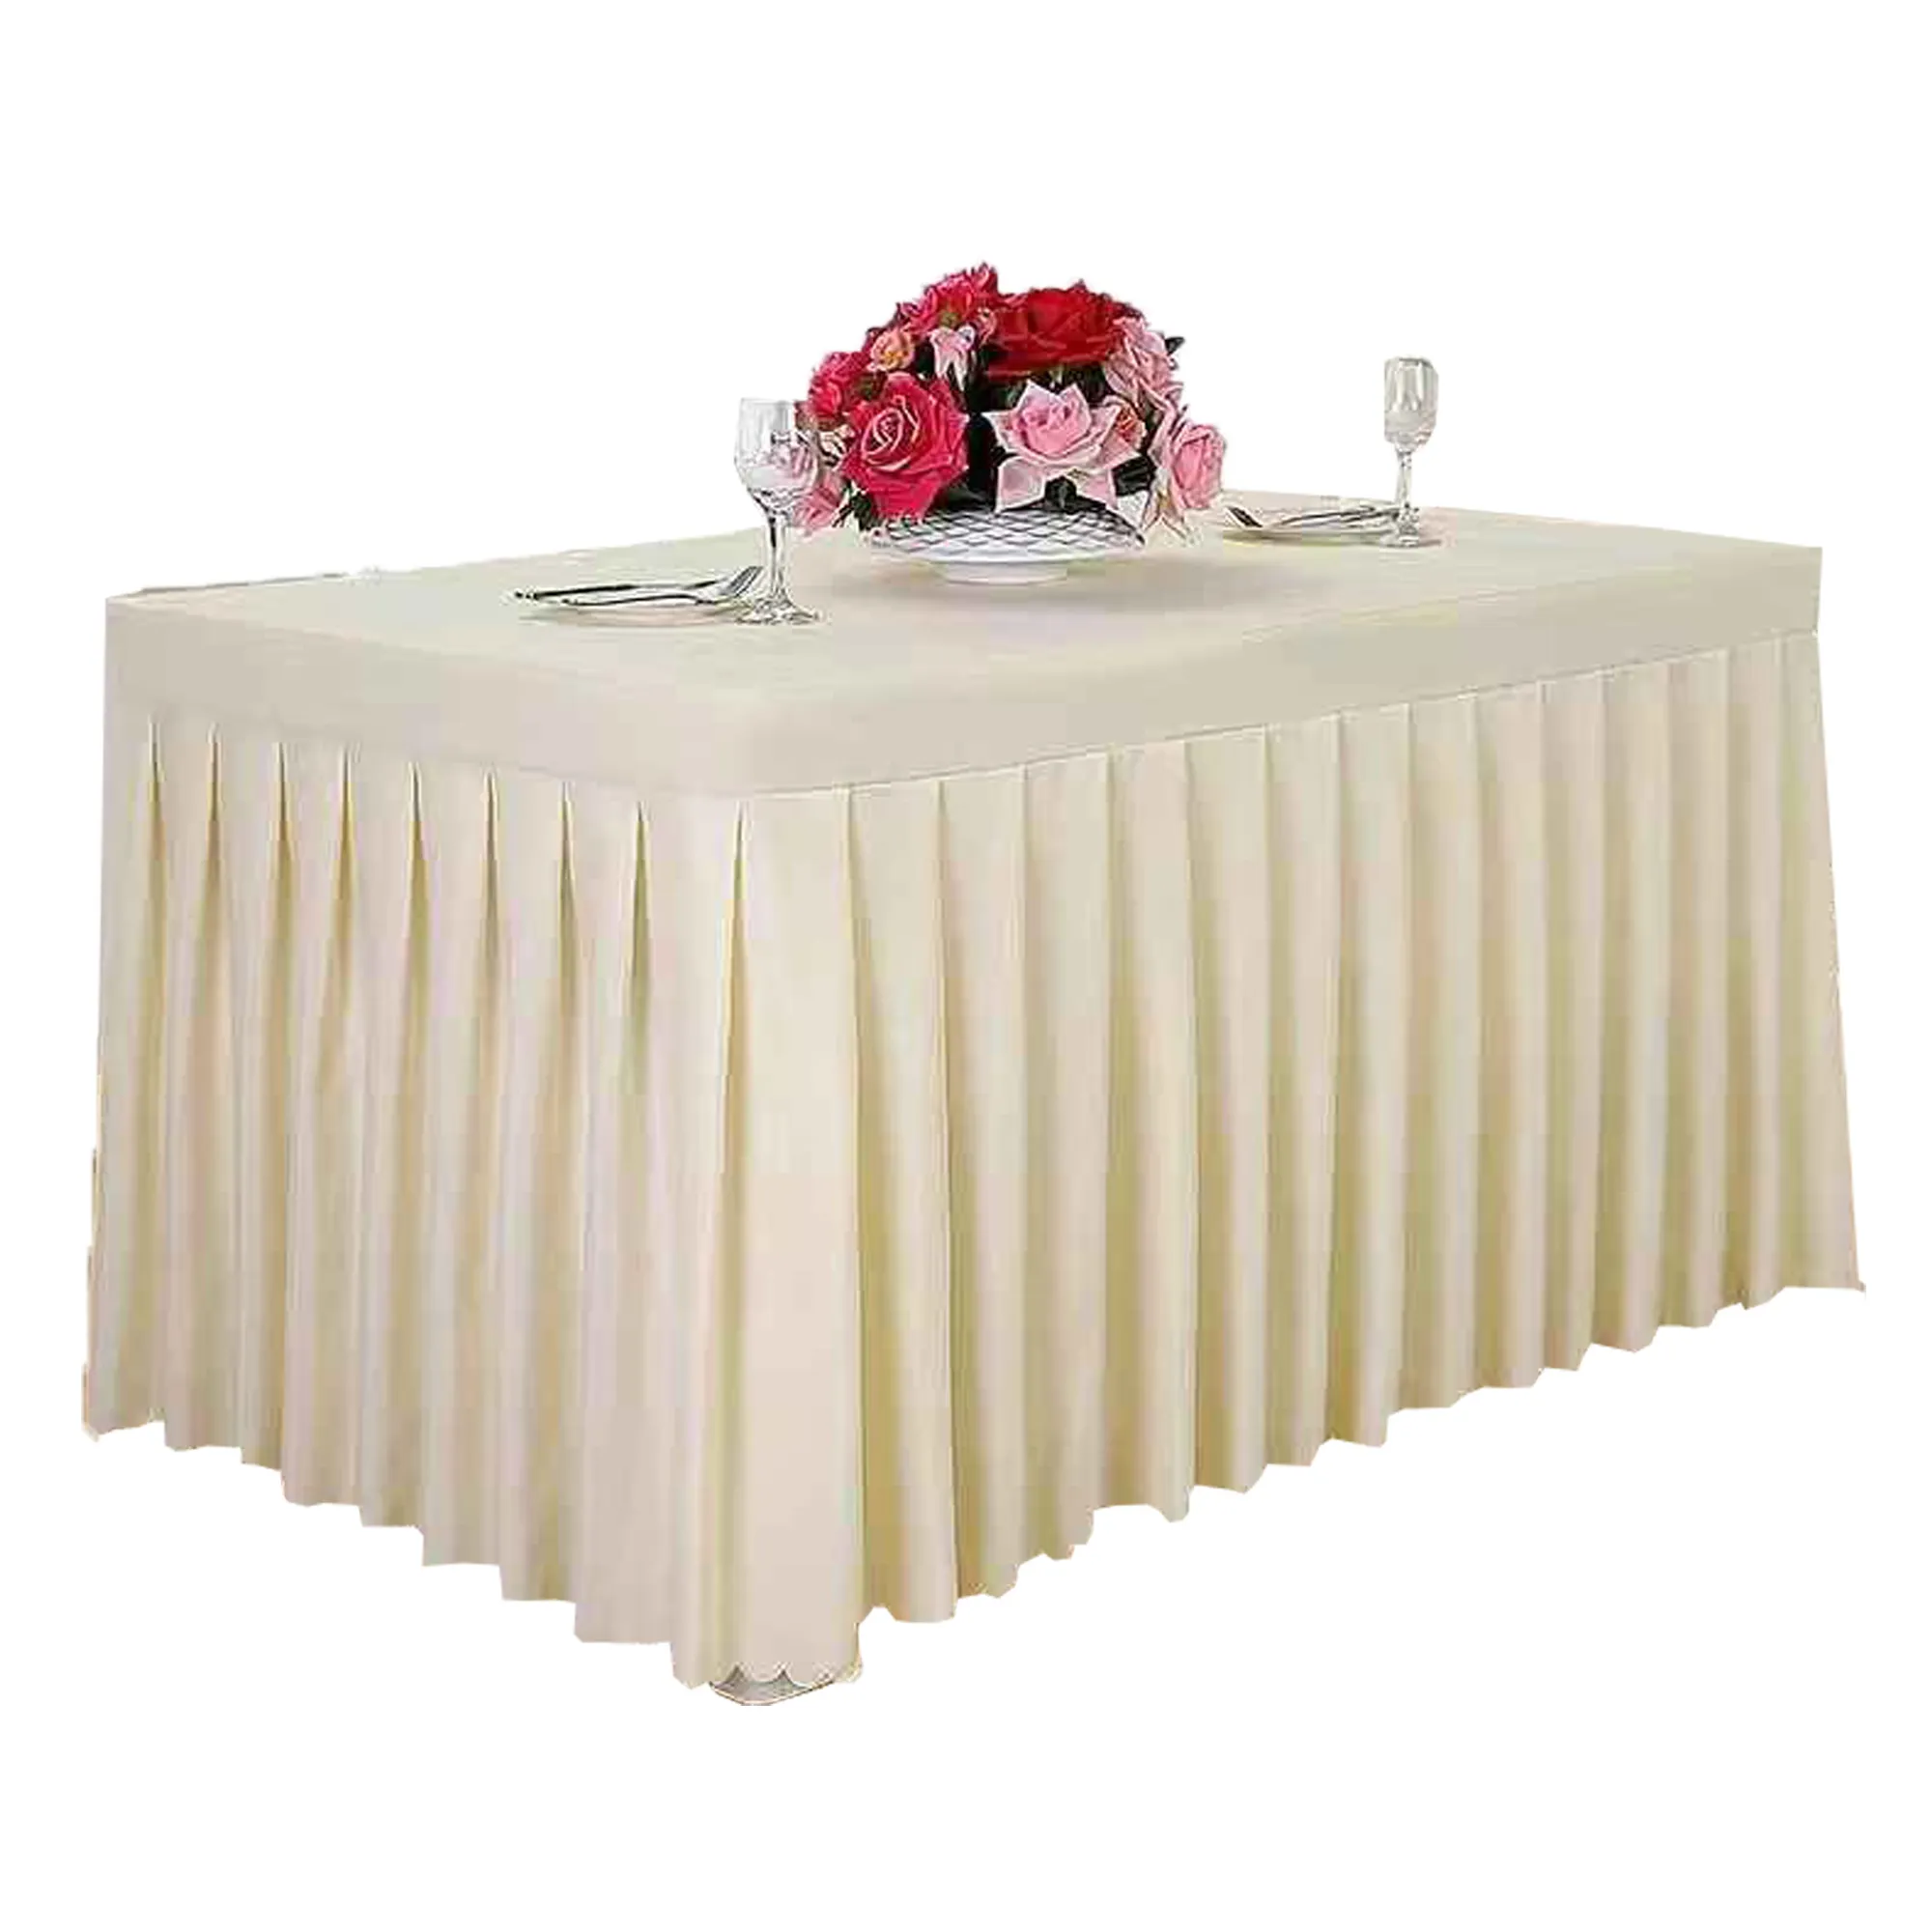 Cubierta elegante de la Mesa de la falda del banquete de la boda al por mayor caliente